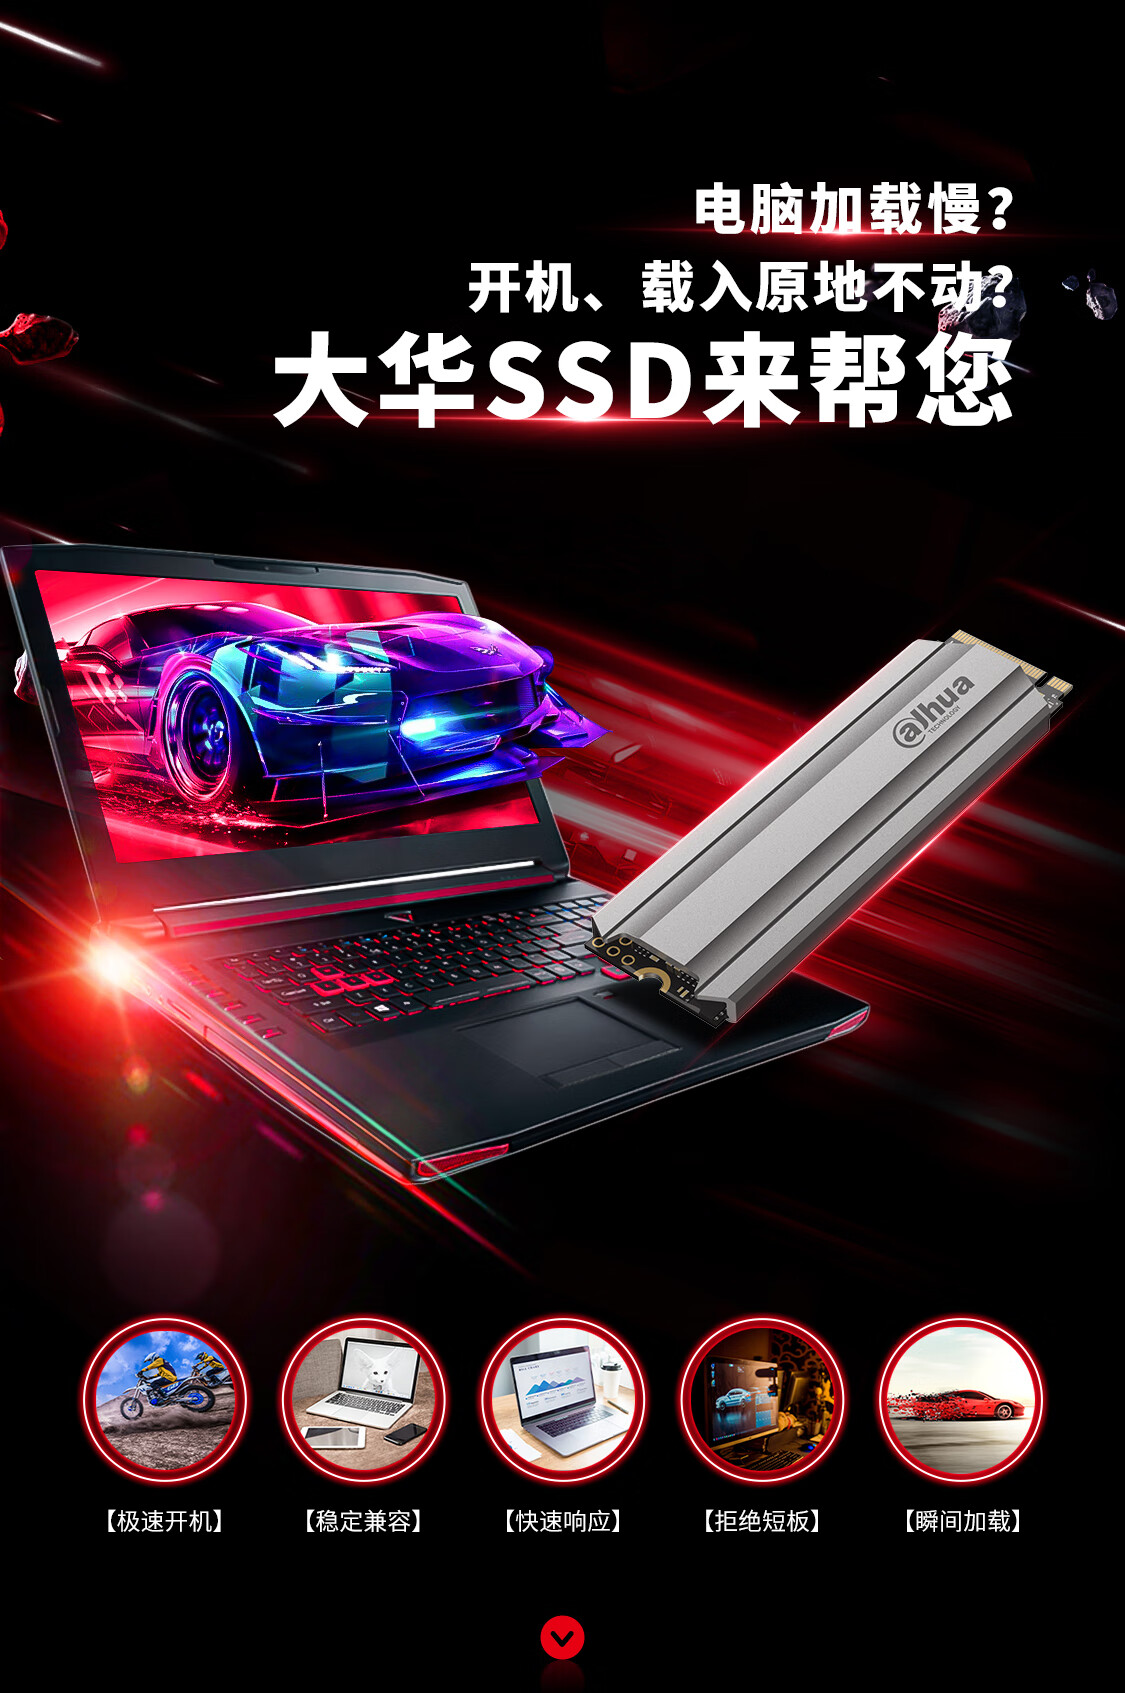 大华（Dahua） 1TB 国产 SSD固态硬盘  M.2接口(NVMe协议) C900 PLUS系列 长江存储颗粒 游戏级固态硬盘